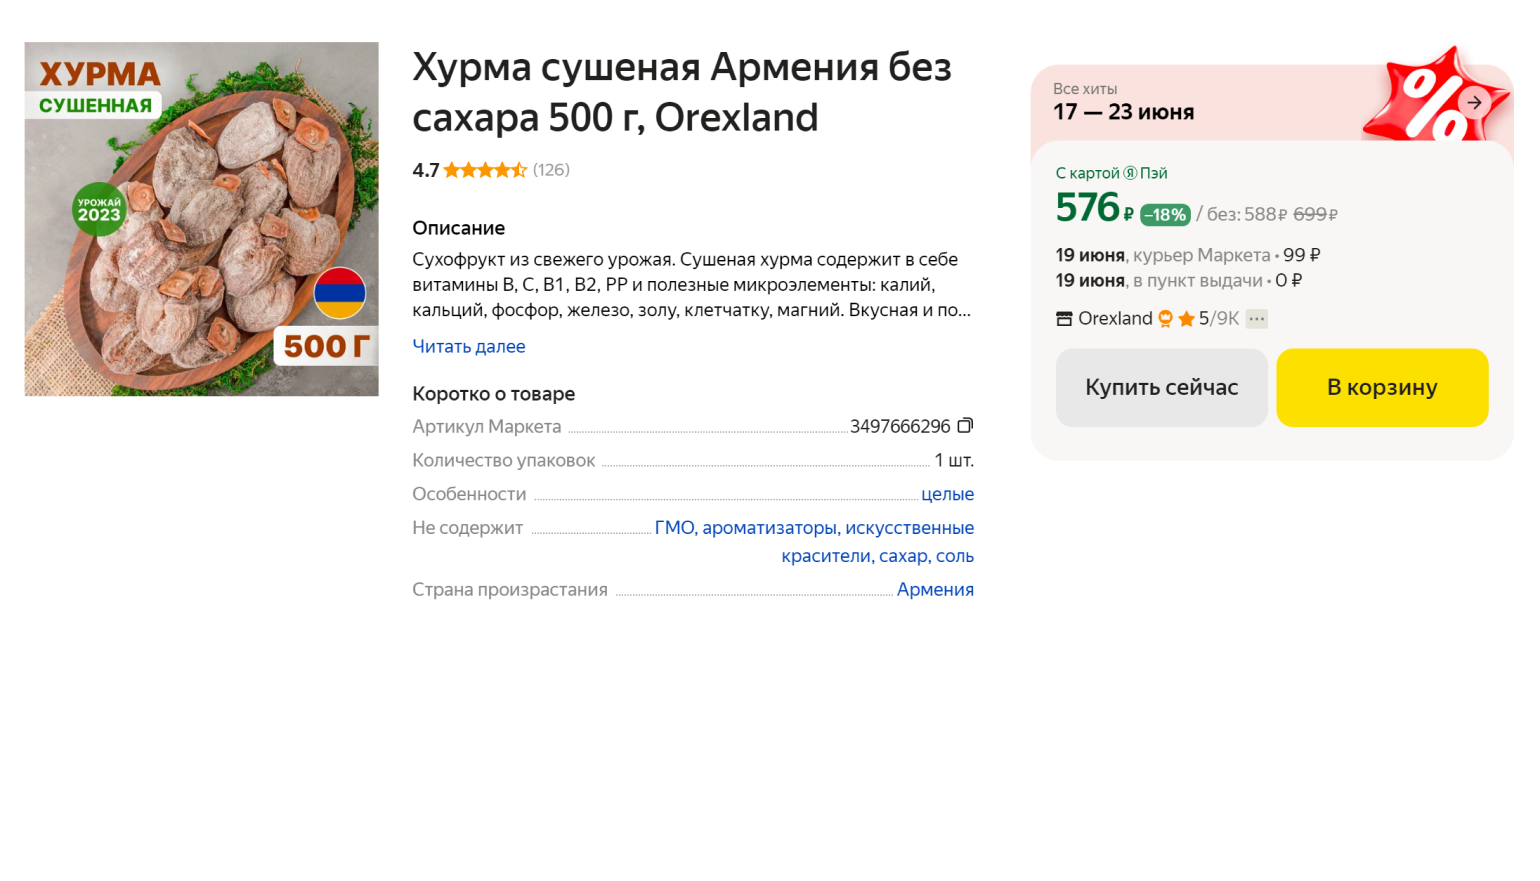 На маркетплейсе полкило сушеной хурмы обойдутся в 519 ₽. Источник: market.yandex.ru